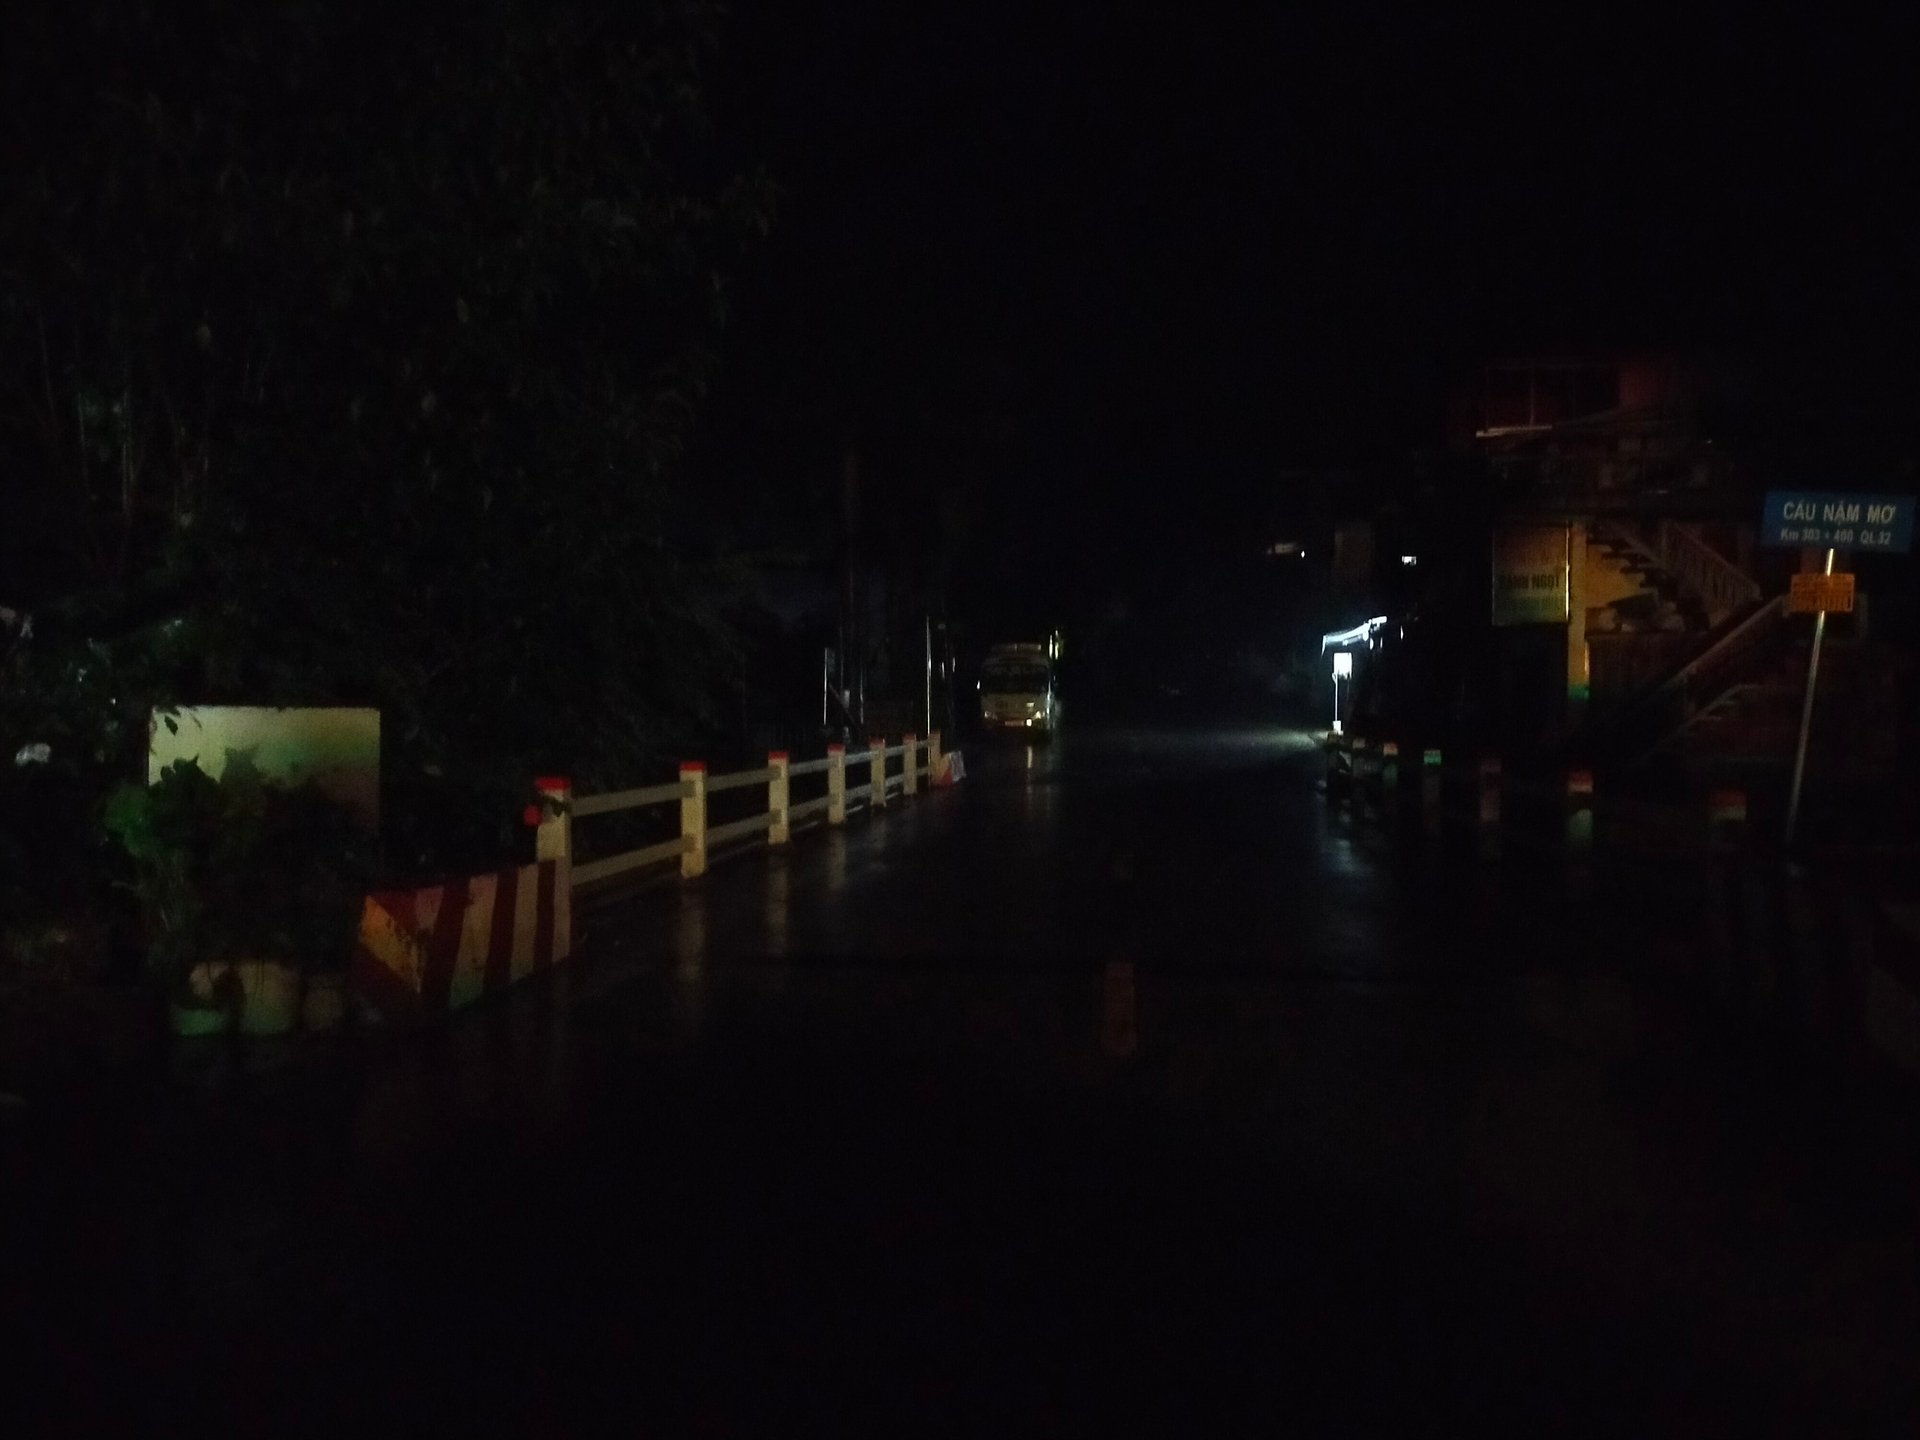 11 xã, thị trấn của huyện Mù Cang Chải bị mất điện trong 3 ngày qua. Ảnh: Thanh Tiến.